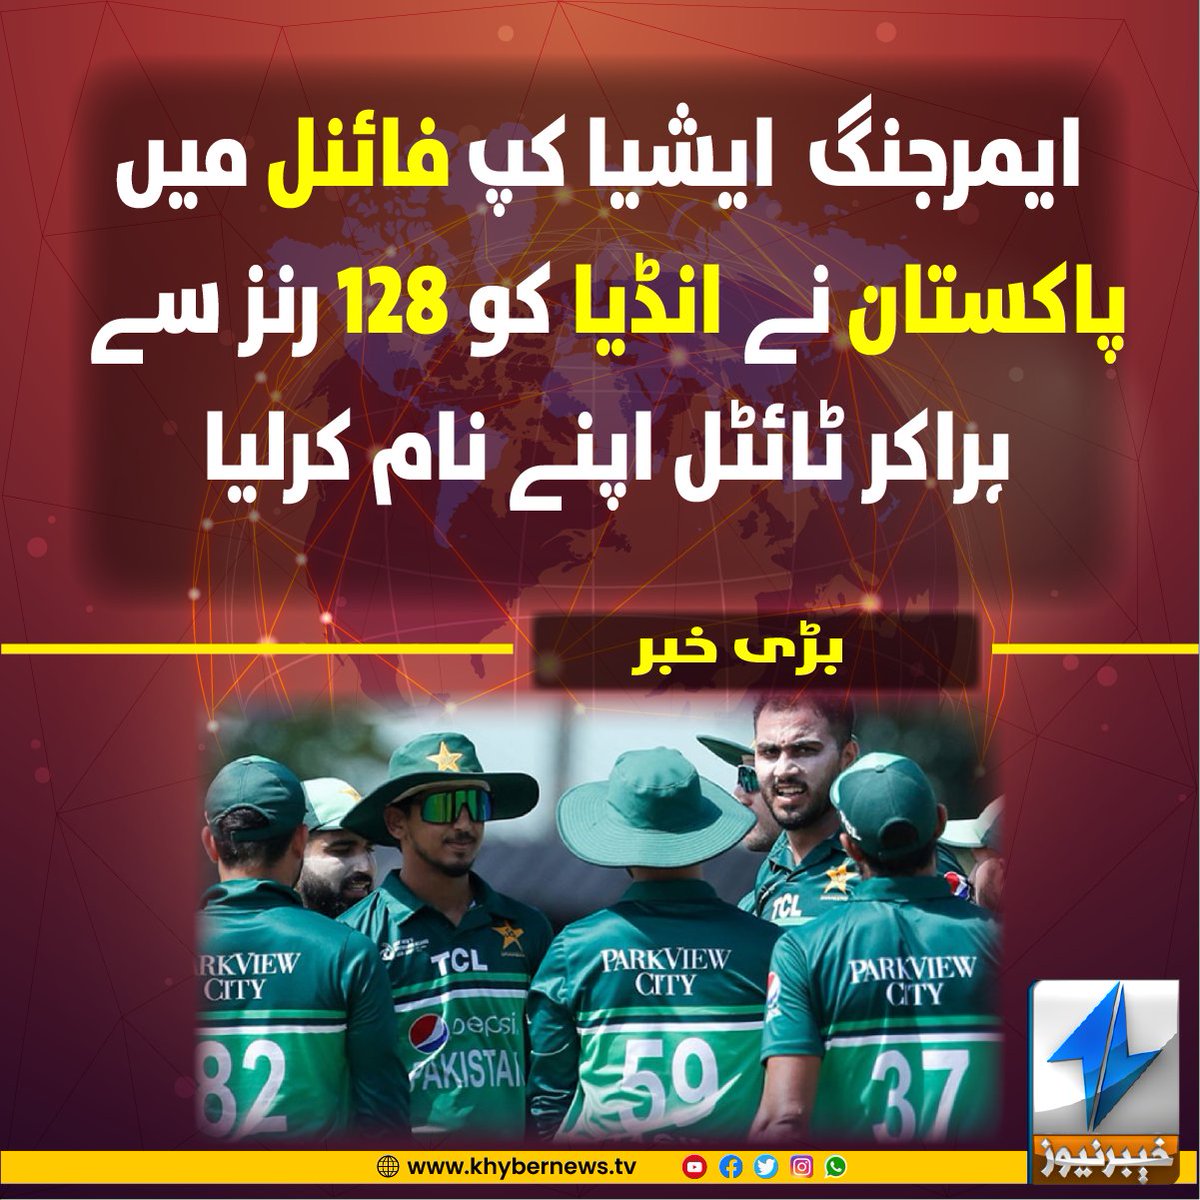 ایمرجنگ ایشیا کپ فائنل میں پاکستان نے انڈیا کو رنز سے ہراکر ٹائٹل اپنے نام کرلیا

#PAKvIND #EmergingAsia #CongratulationsPakistan #KhyberNews